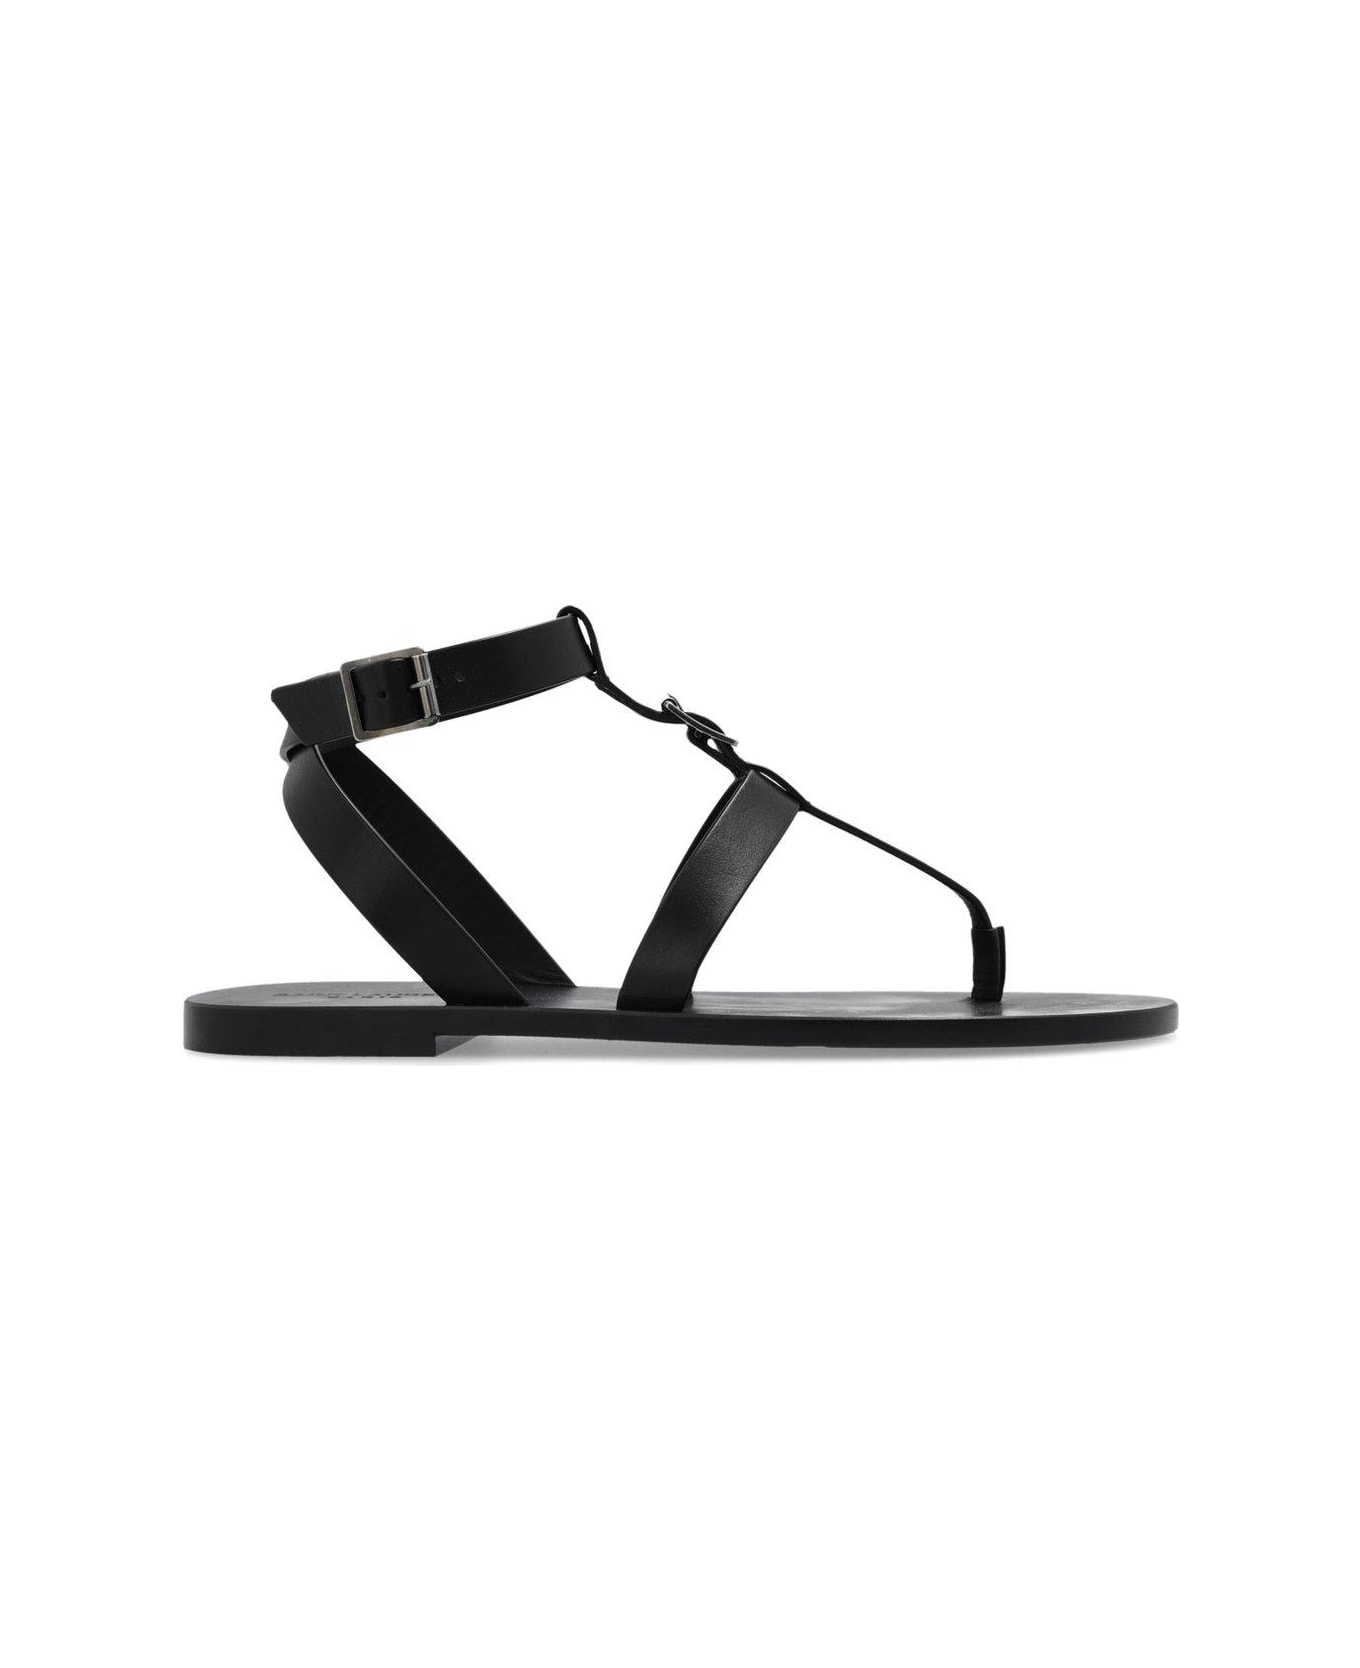 Saint Laurent Bcukle Detailed Open Toe Sandals - Black